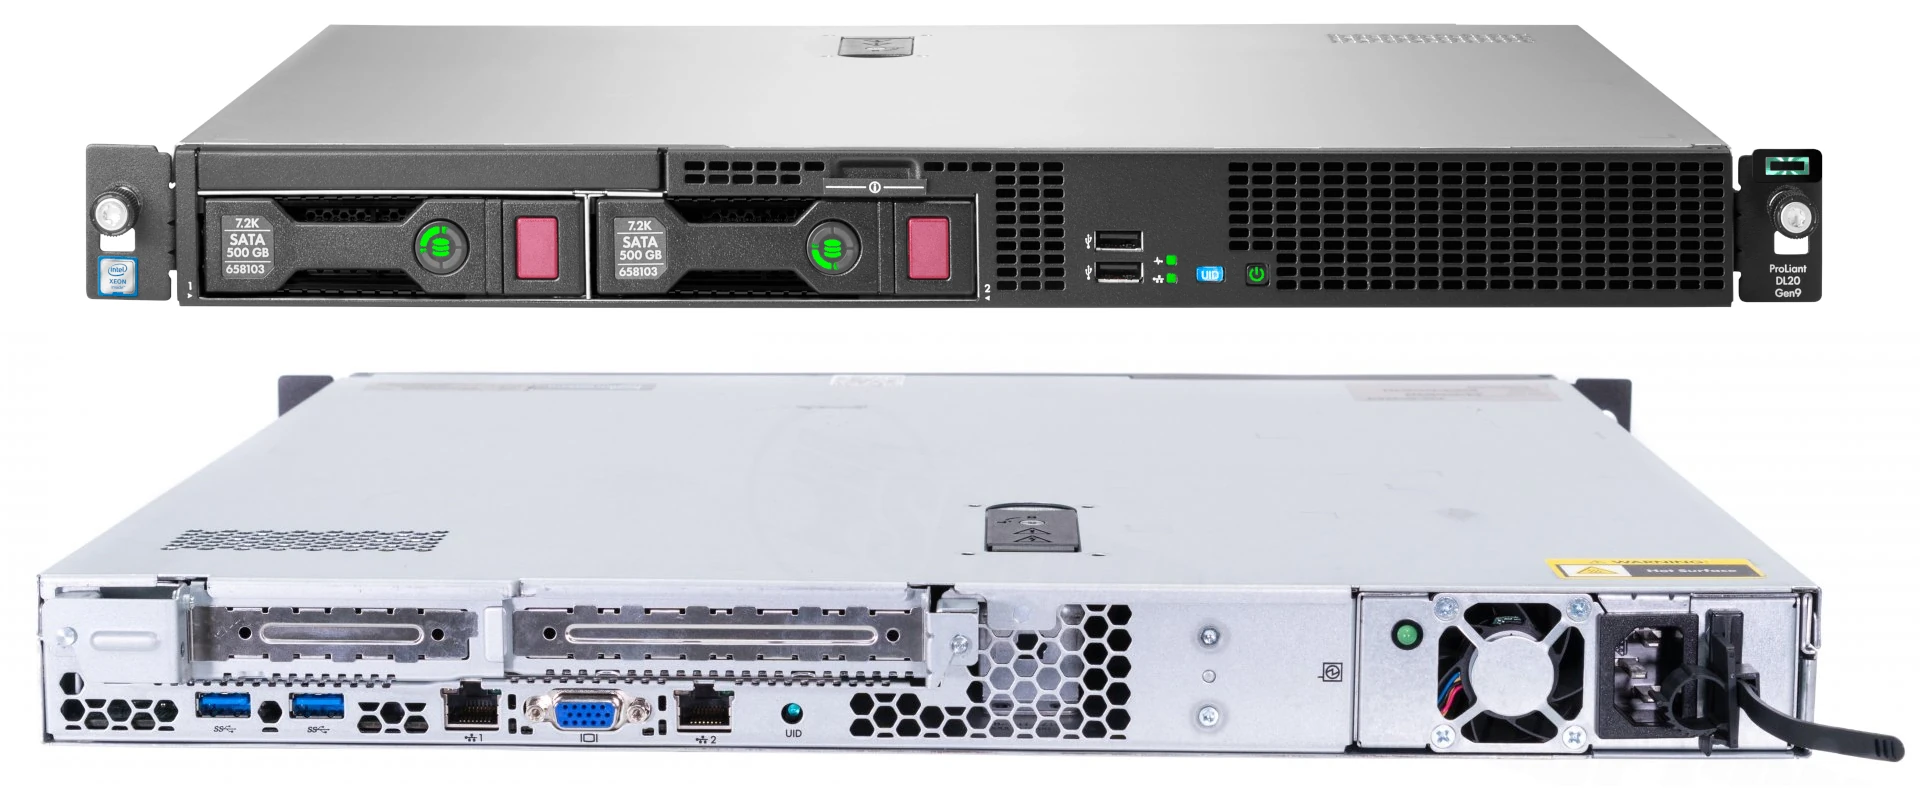 The existing HP DL20 Gen9 server.